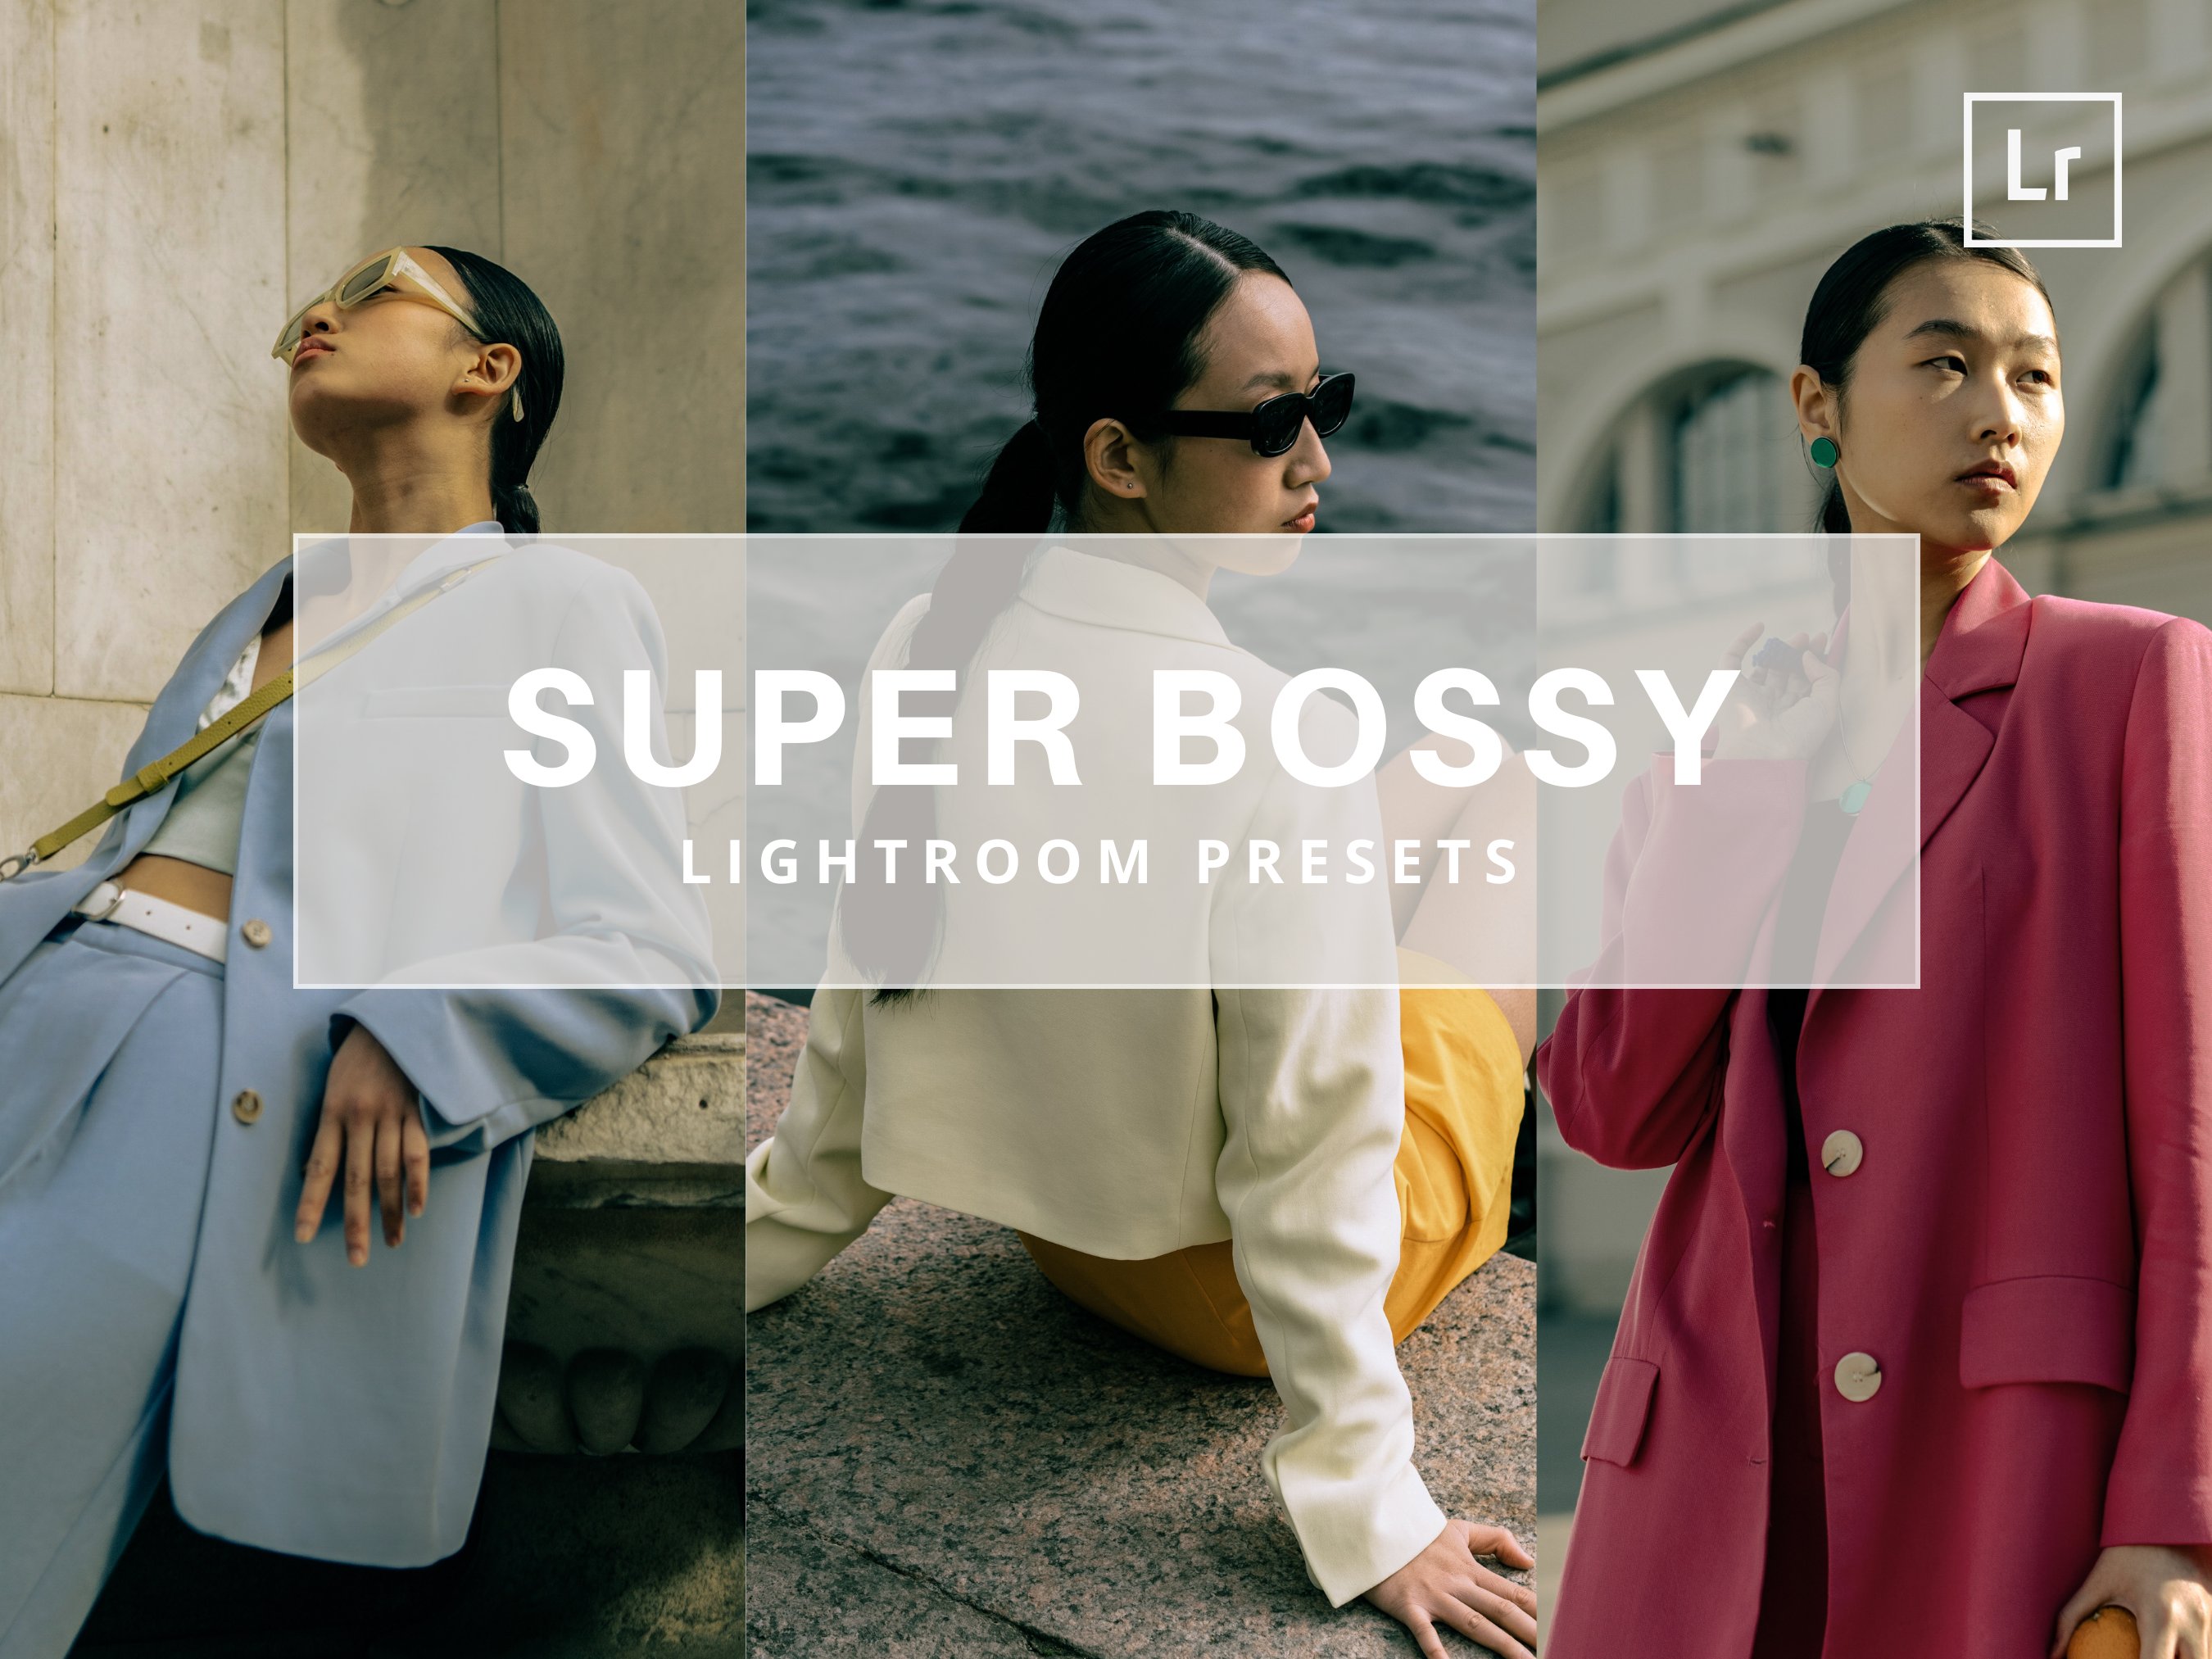 Super Bossy Lightroom Mobile Presetcover image.